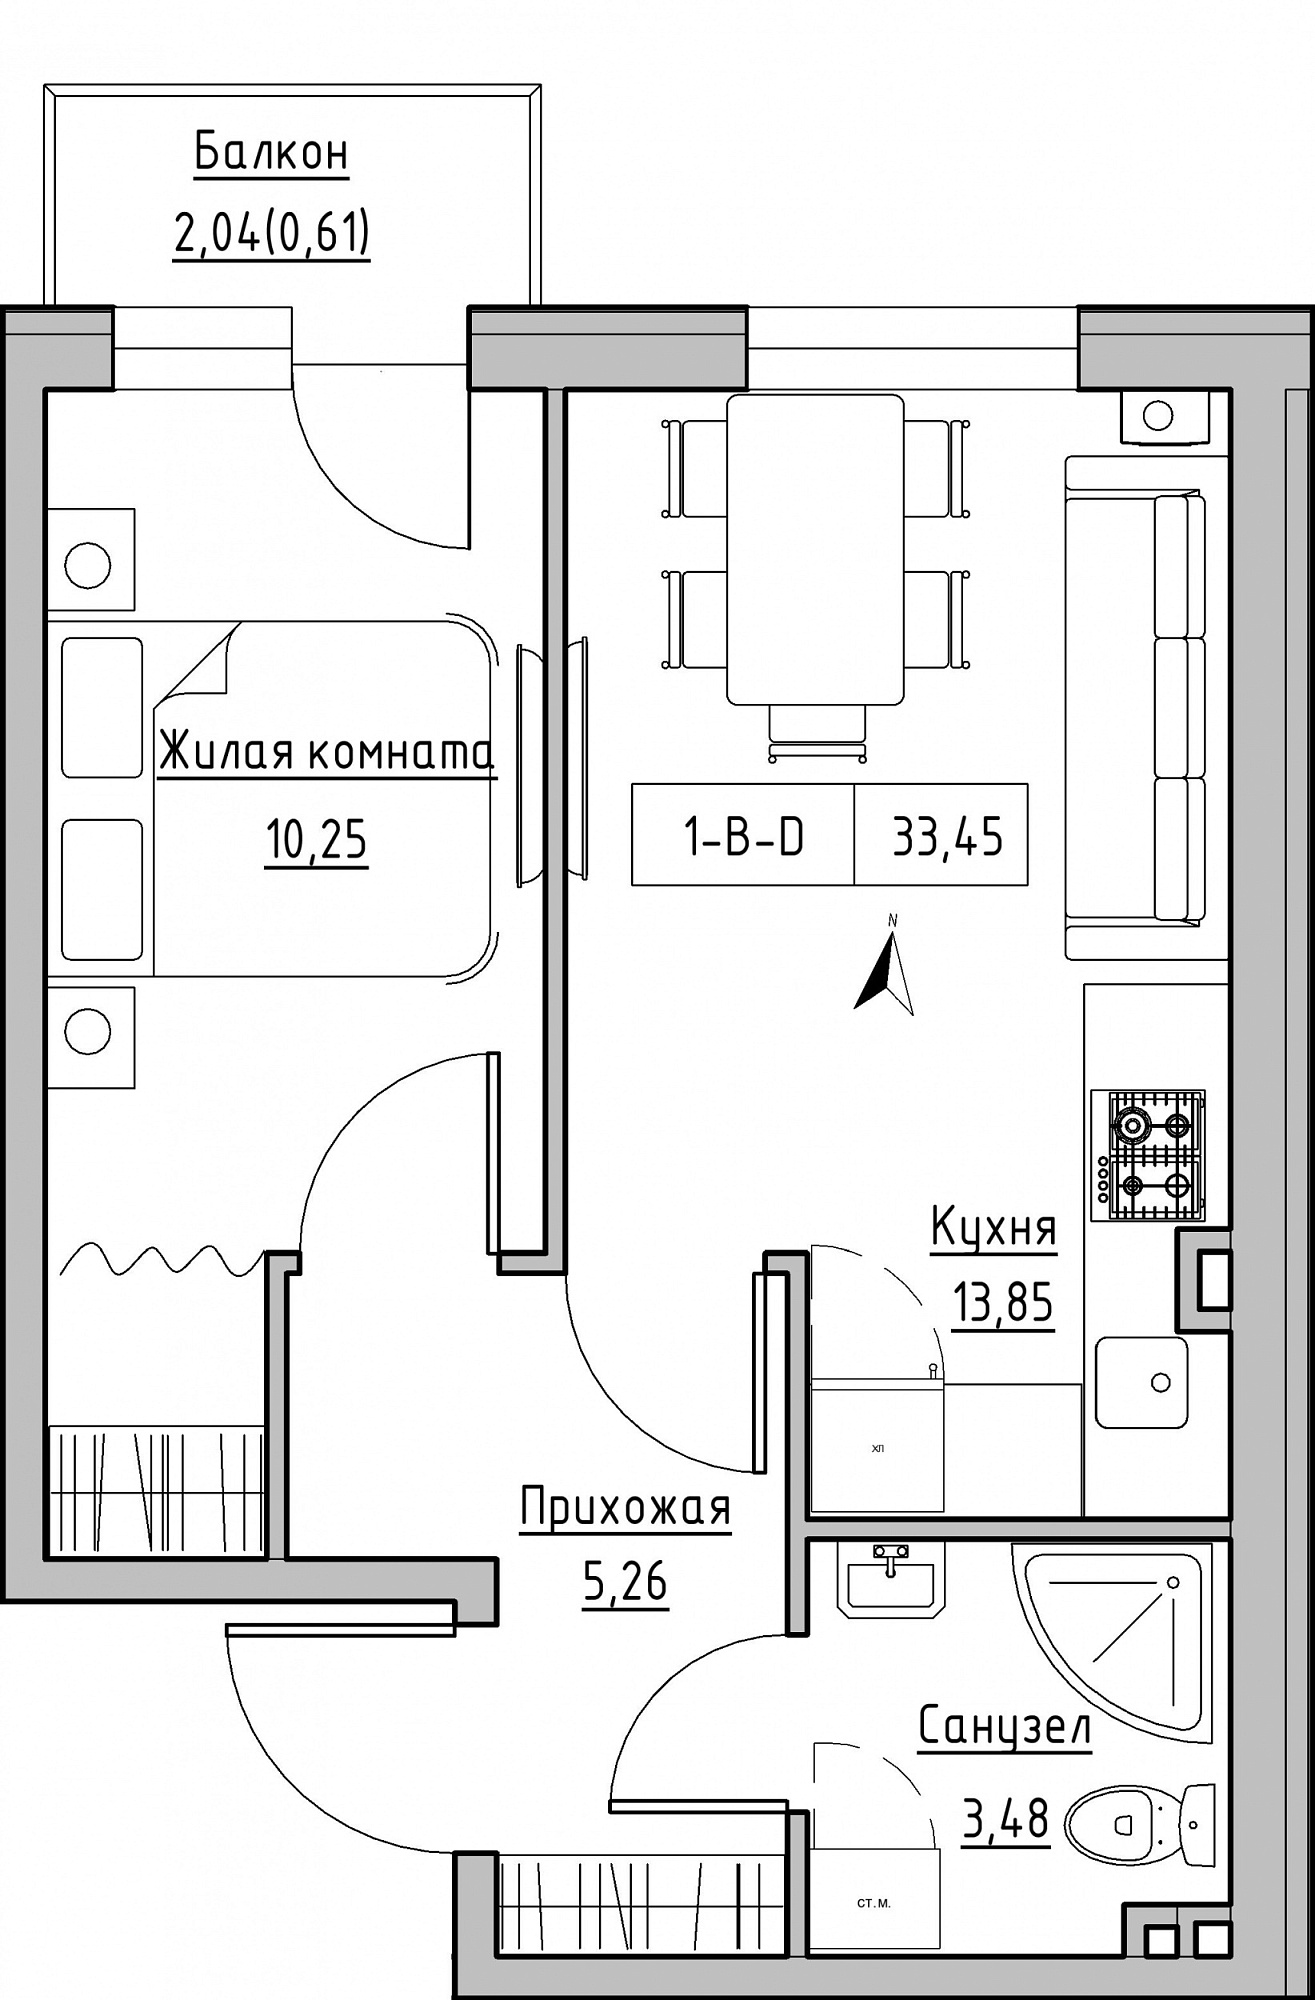 Планування 1-к квартира площею 33.45м2, KS-024-03/0003.